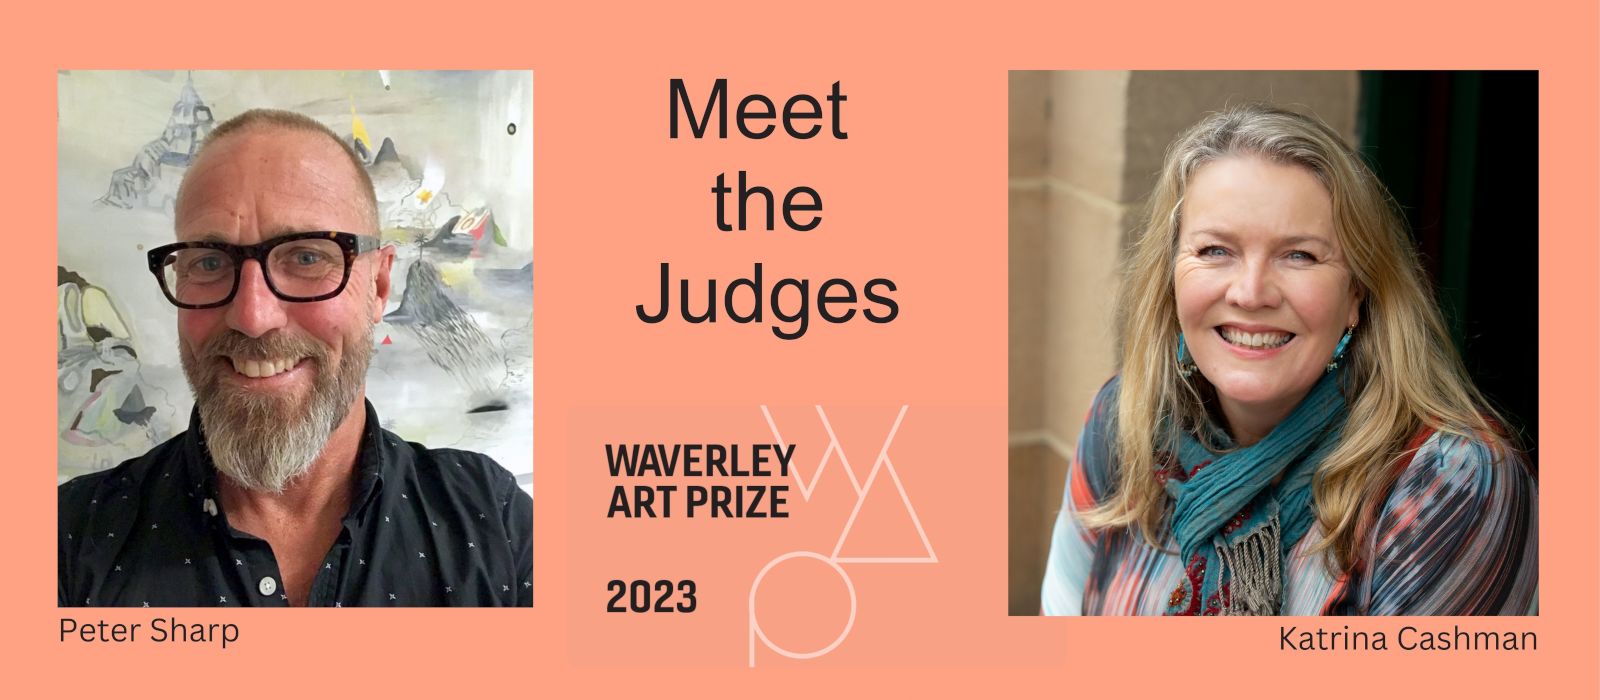 Meet the Judges - Waverley Art Prize 2023